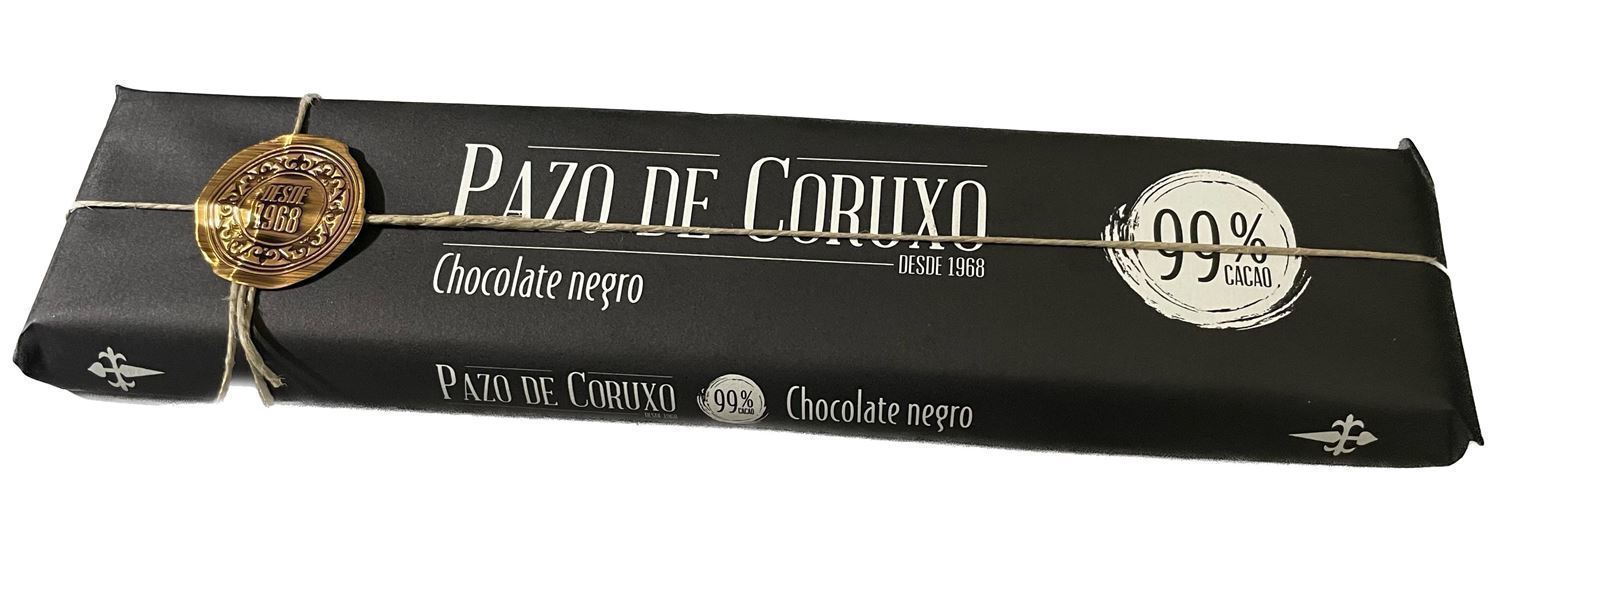 TABLETA CHOCOLATE 100% PAZO DE CORUXO 300grs - Imagen 1